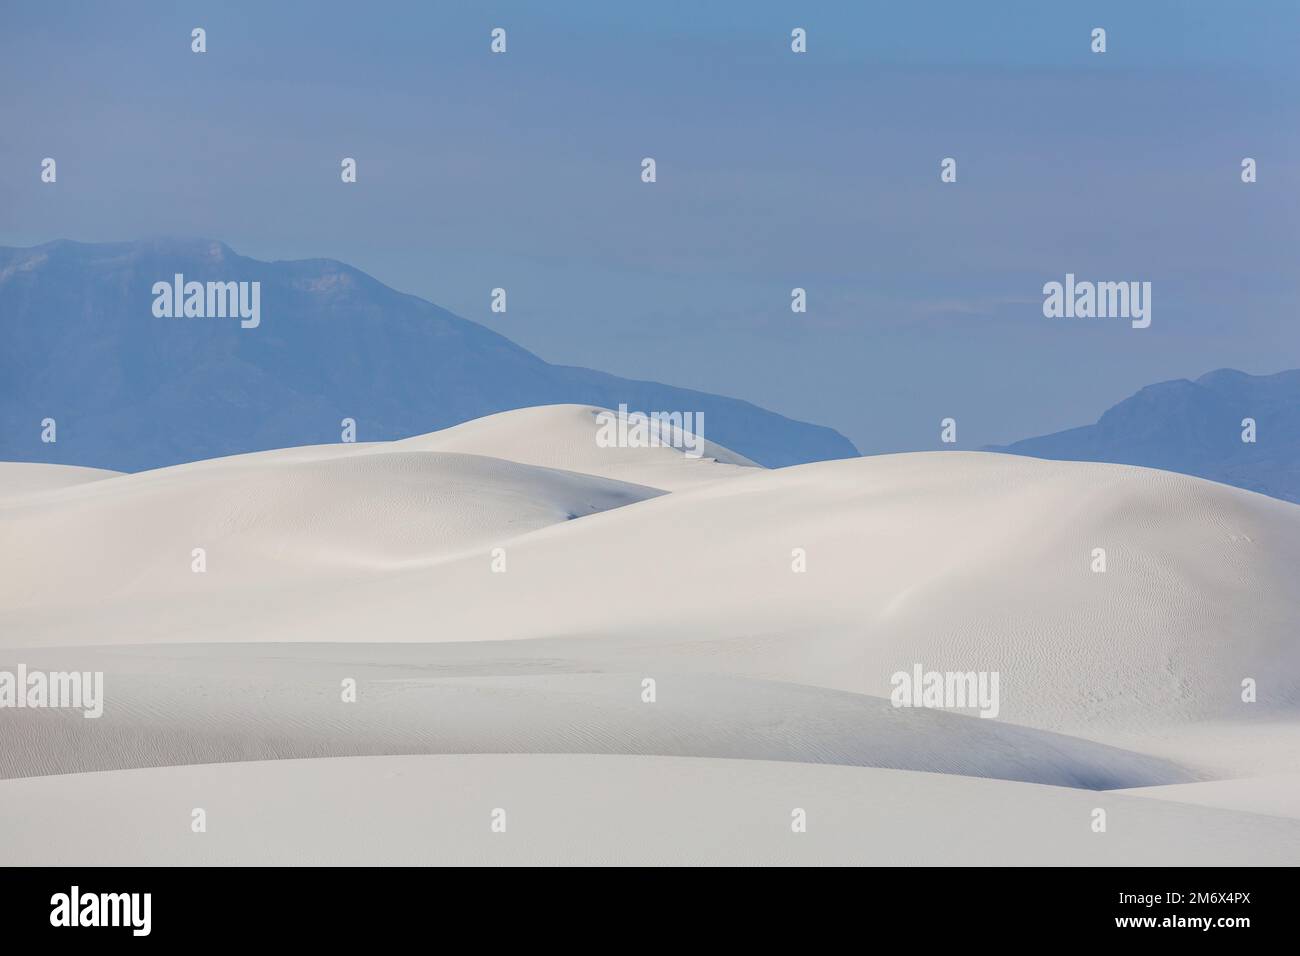 Dunes de sable blanc Banque D'Images